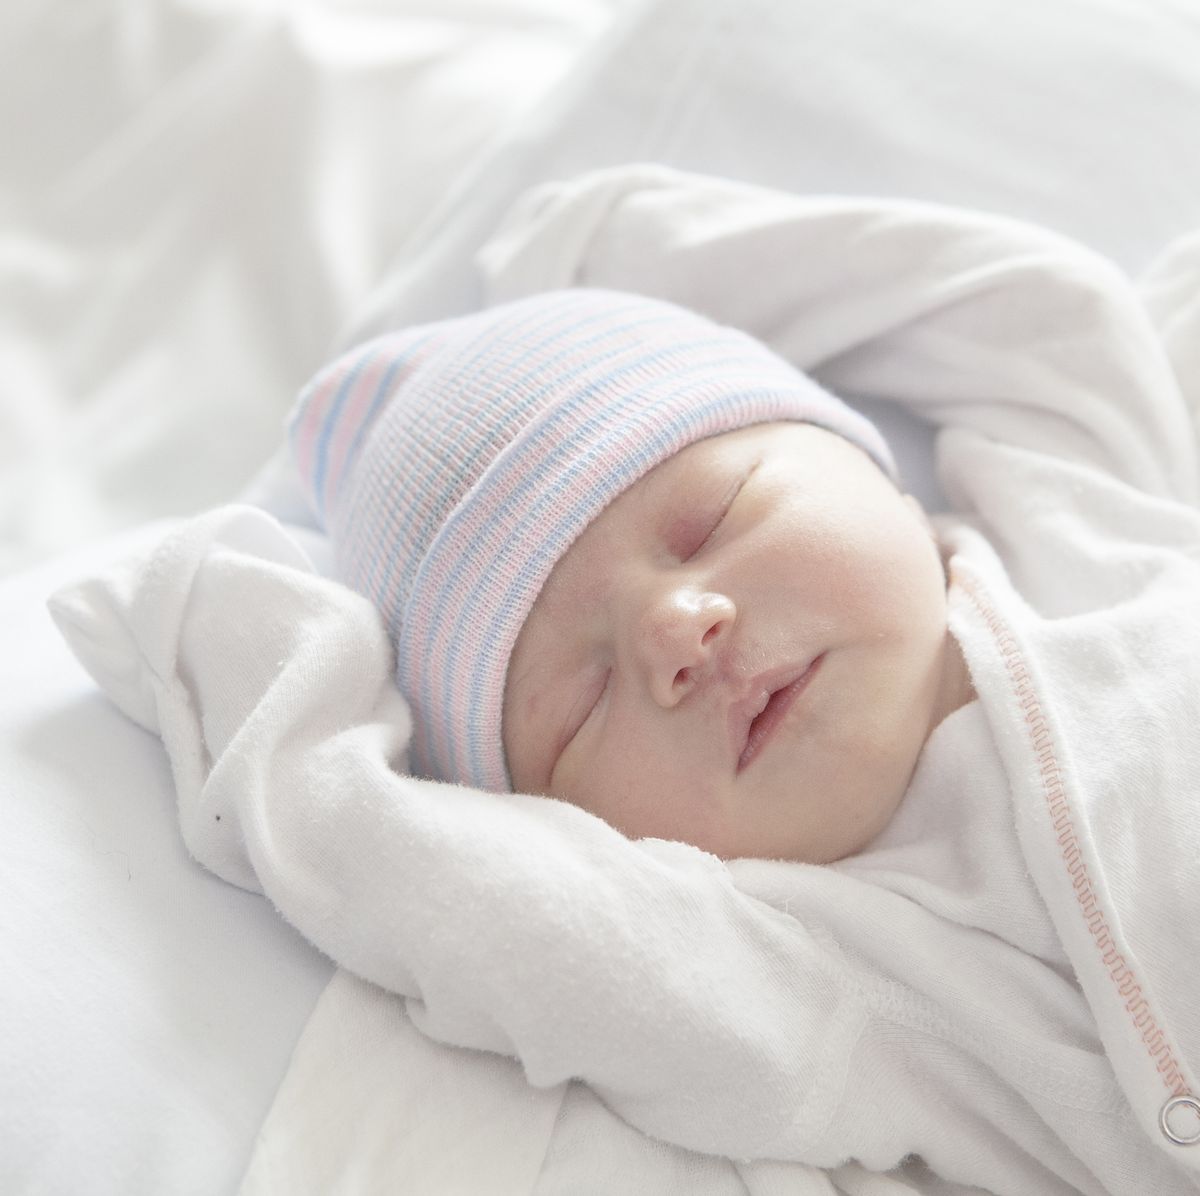 Por qué es necesaria una mantita para el recién nacido durante el verano?